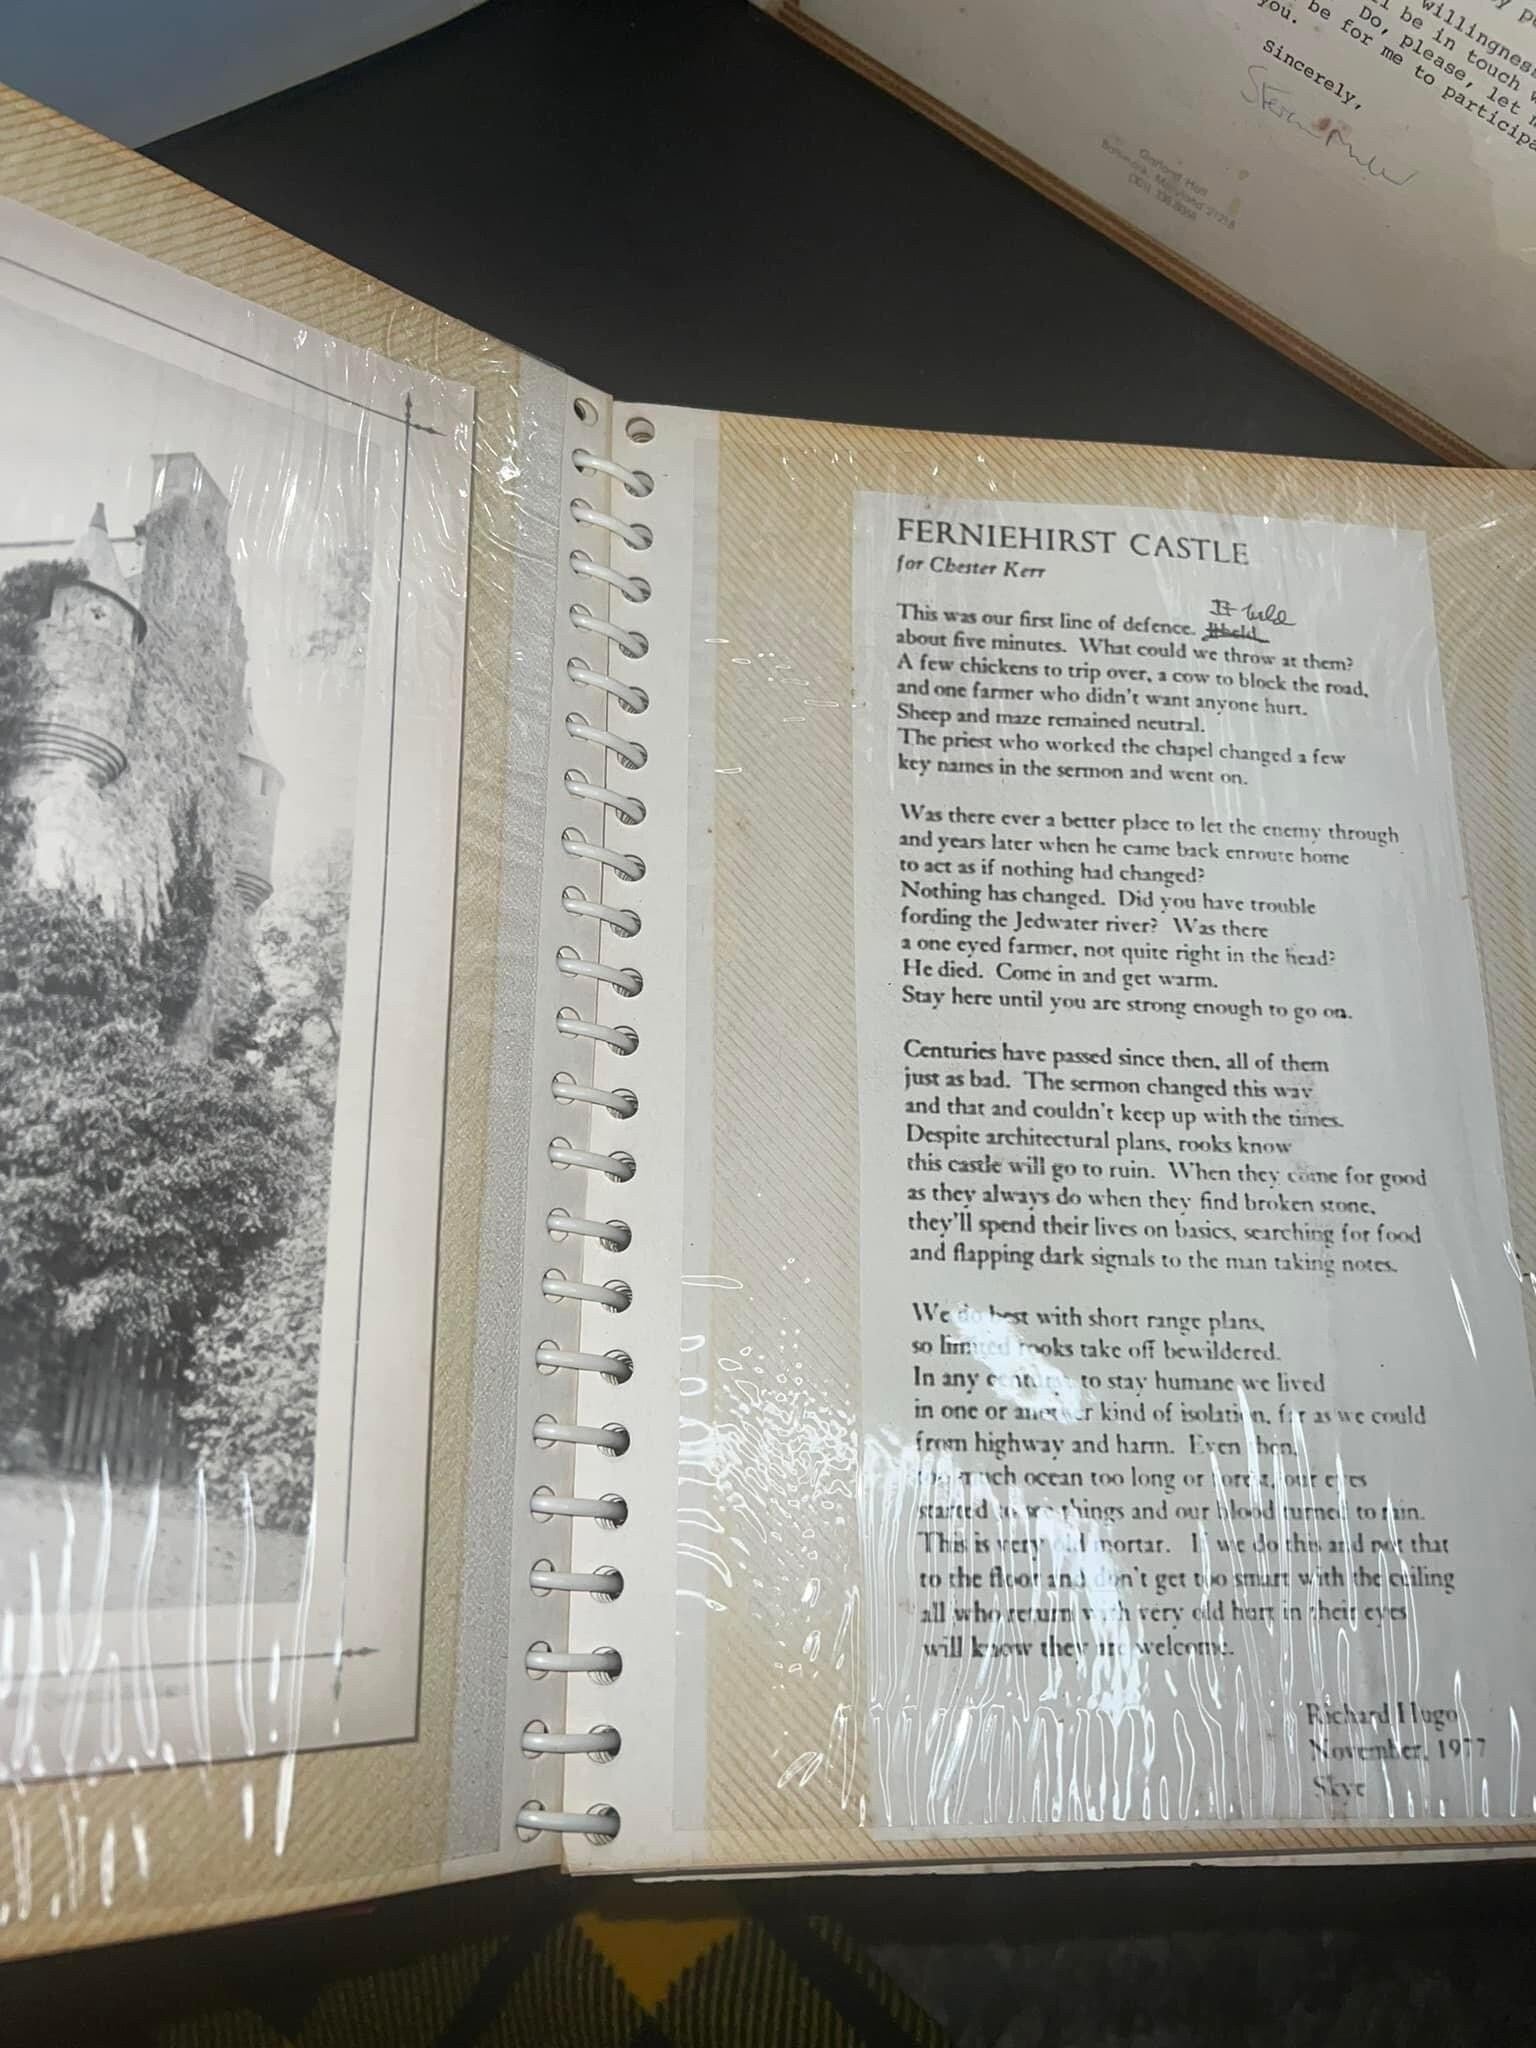 Vintage genealogy document Collection for Mr Chester kerr 1978-1984 John Hopkins , jethart callant’s festival